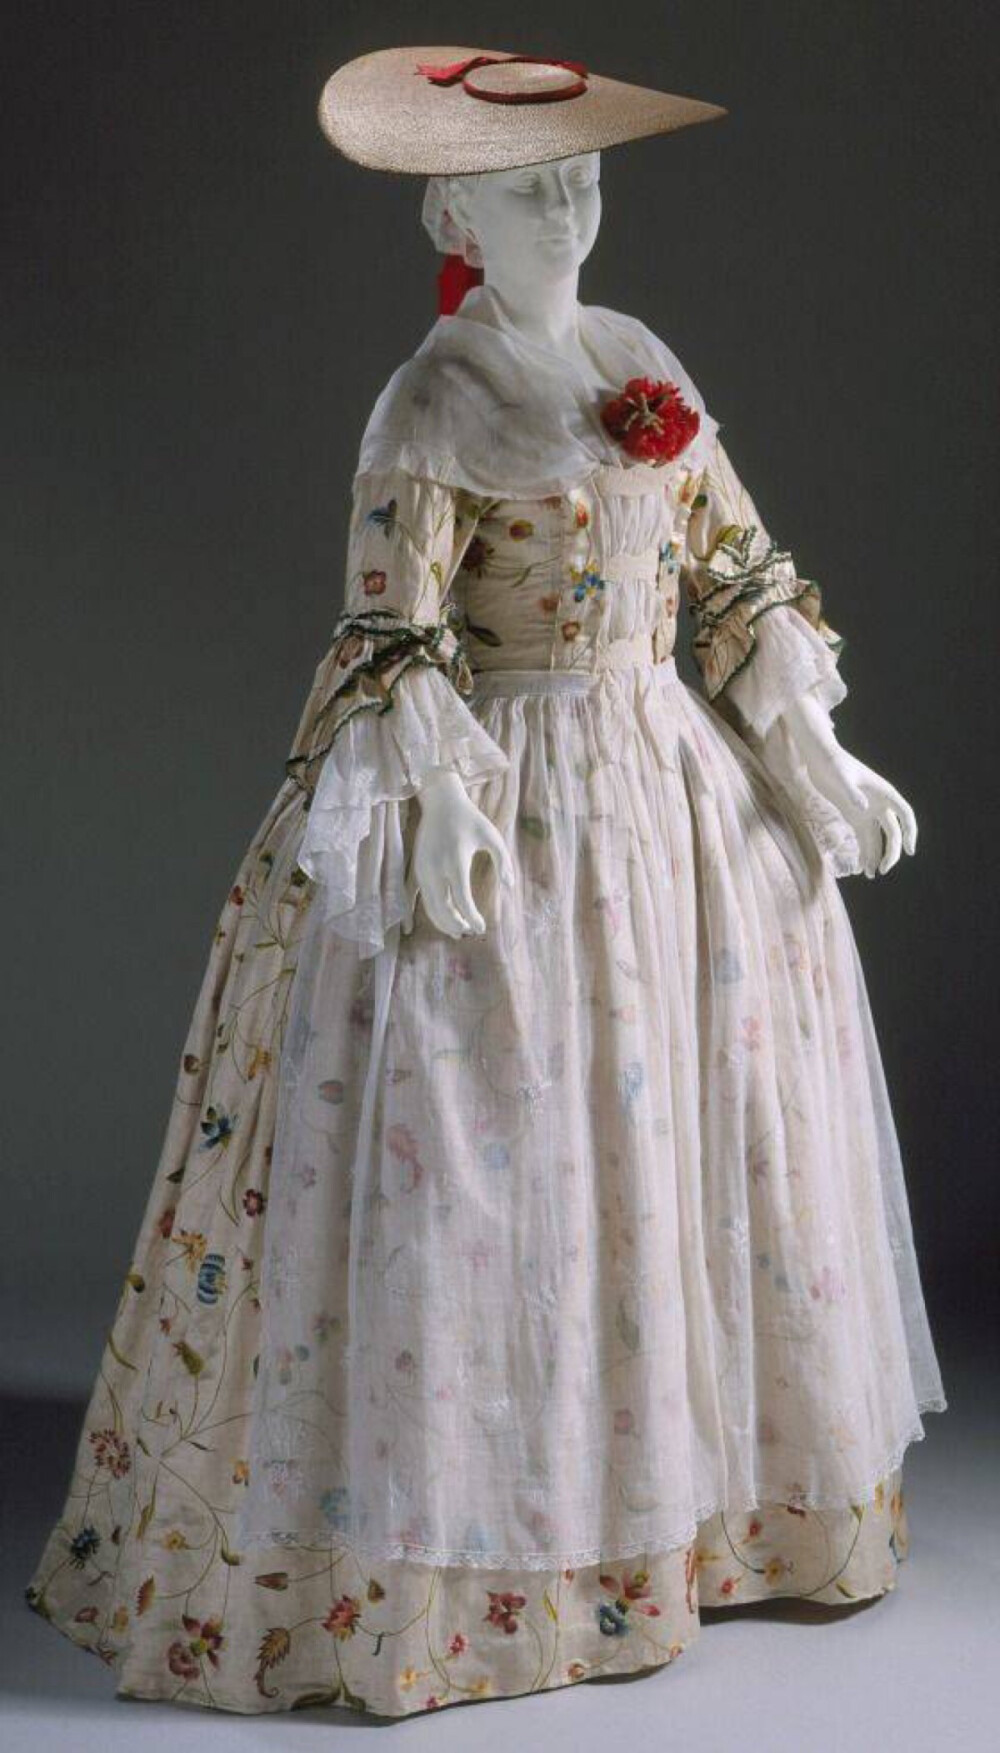 十八世纪的裙子，这个时代特别动荡，是不少电影和文学作品热衷的时代哦